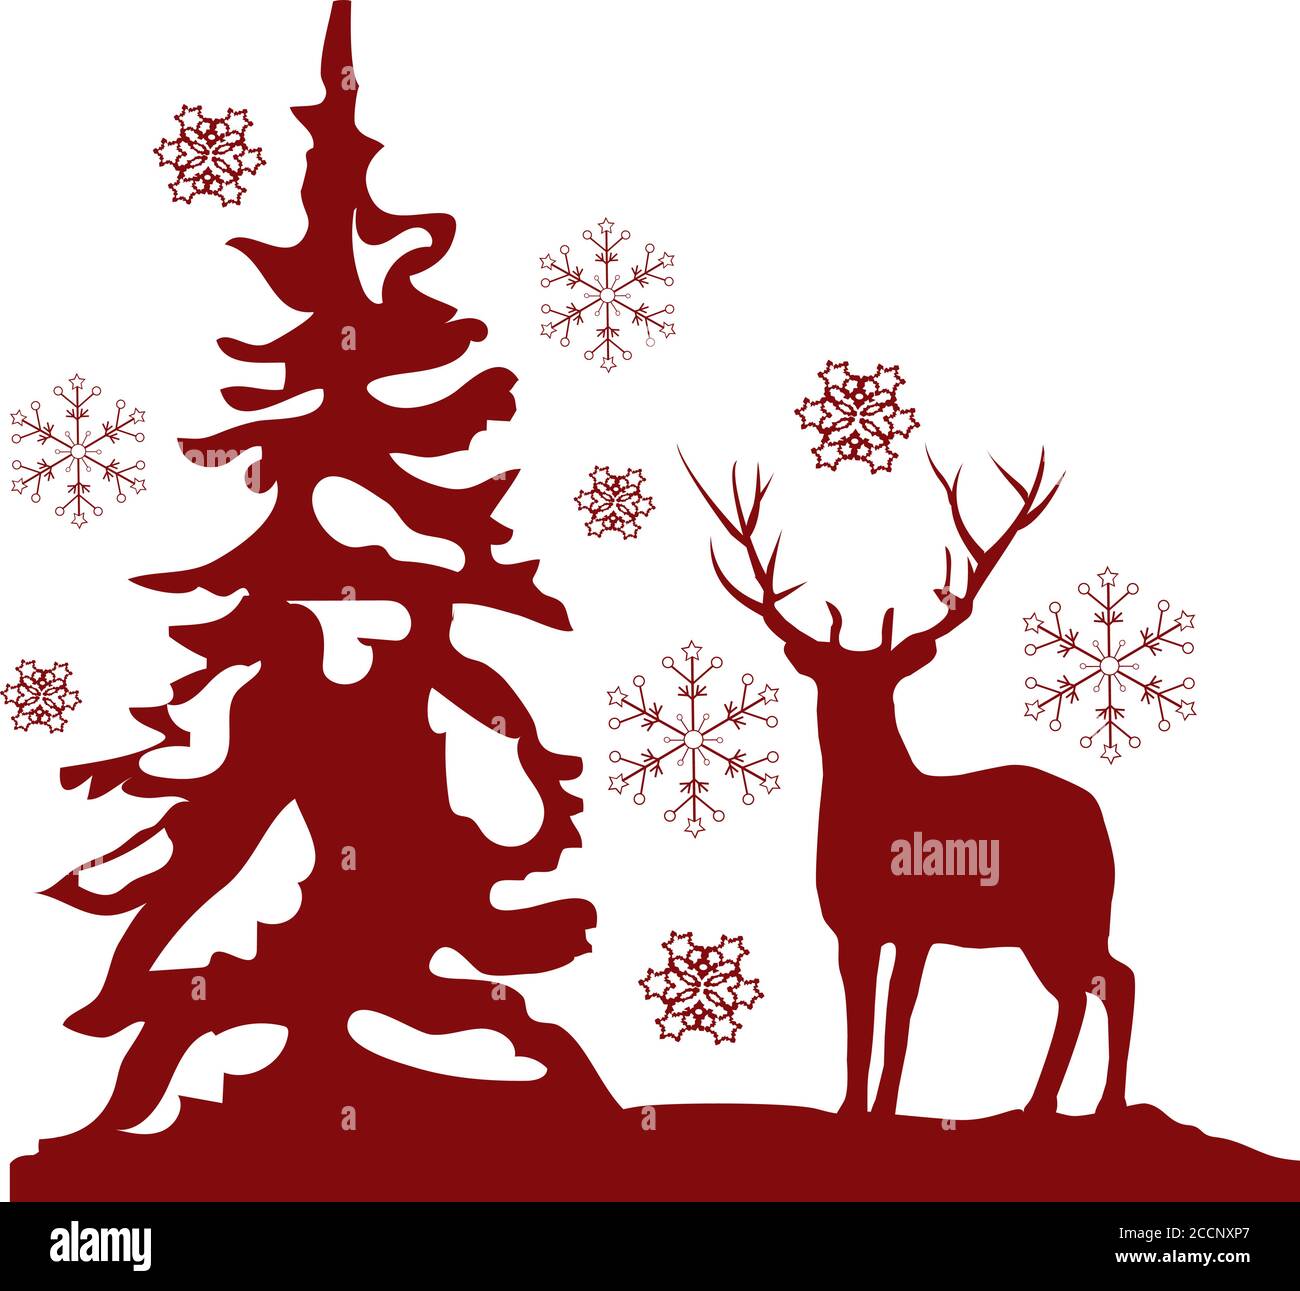 Illustrazione vettoriale di cervi rossi, abeti, fiocchi di neve sfondo natalizio. Illustrazione Vettoriale